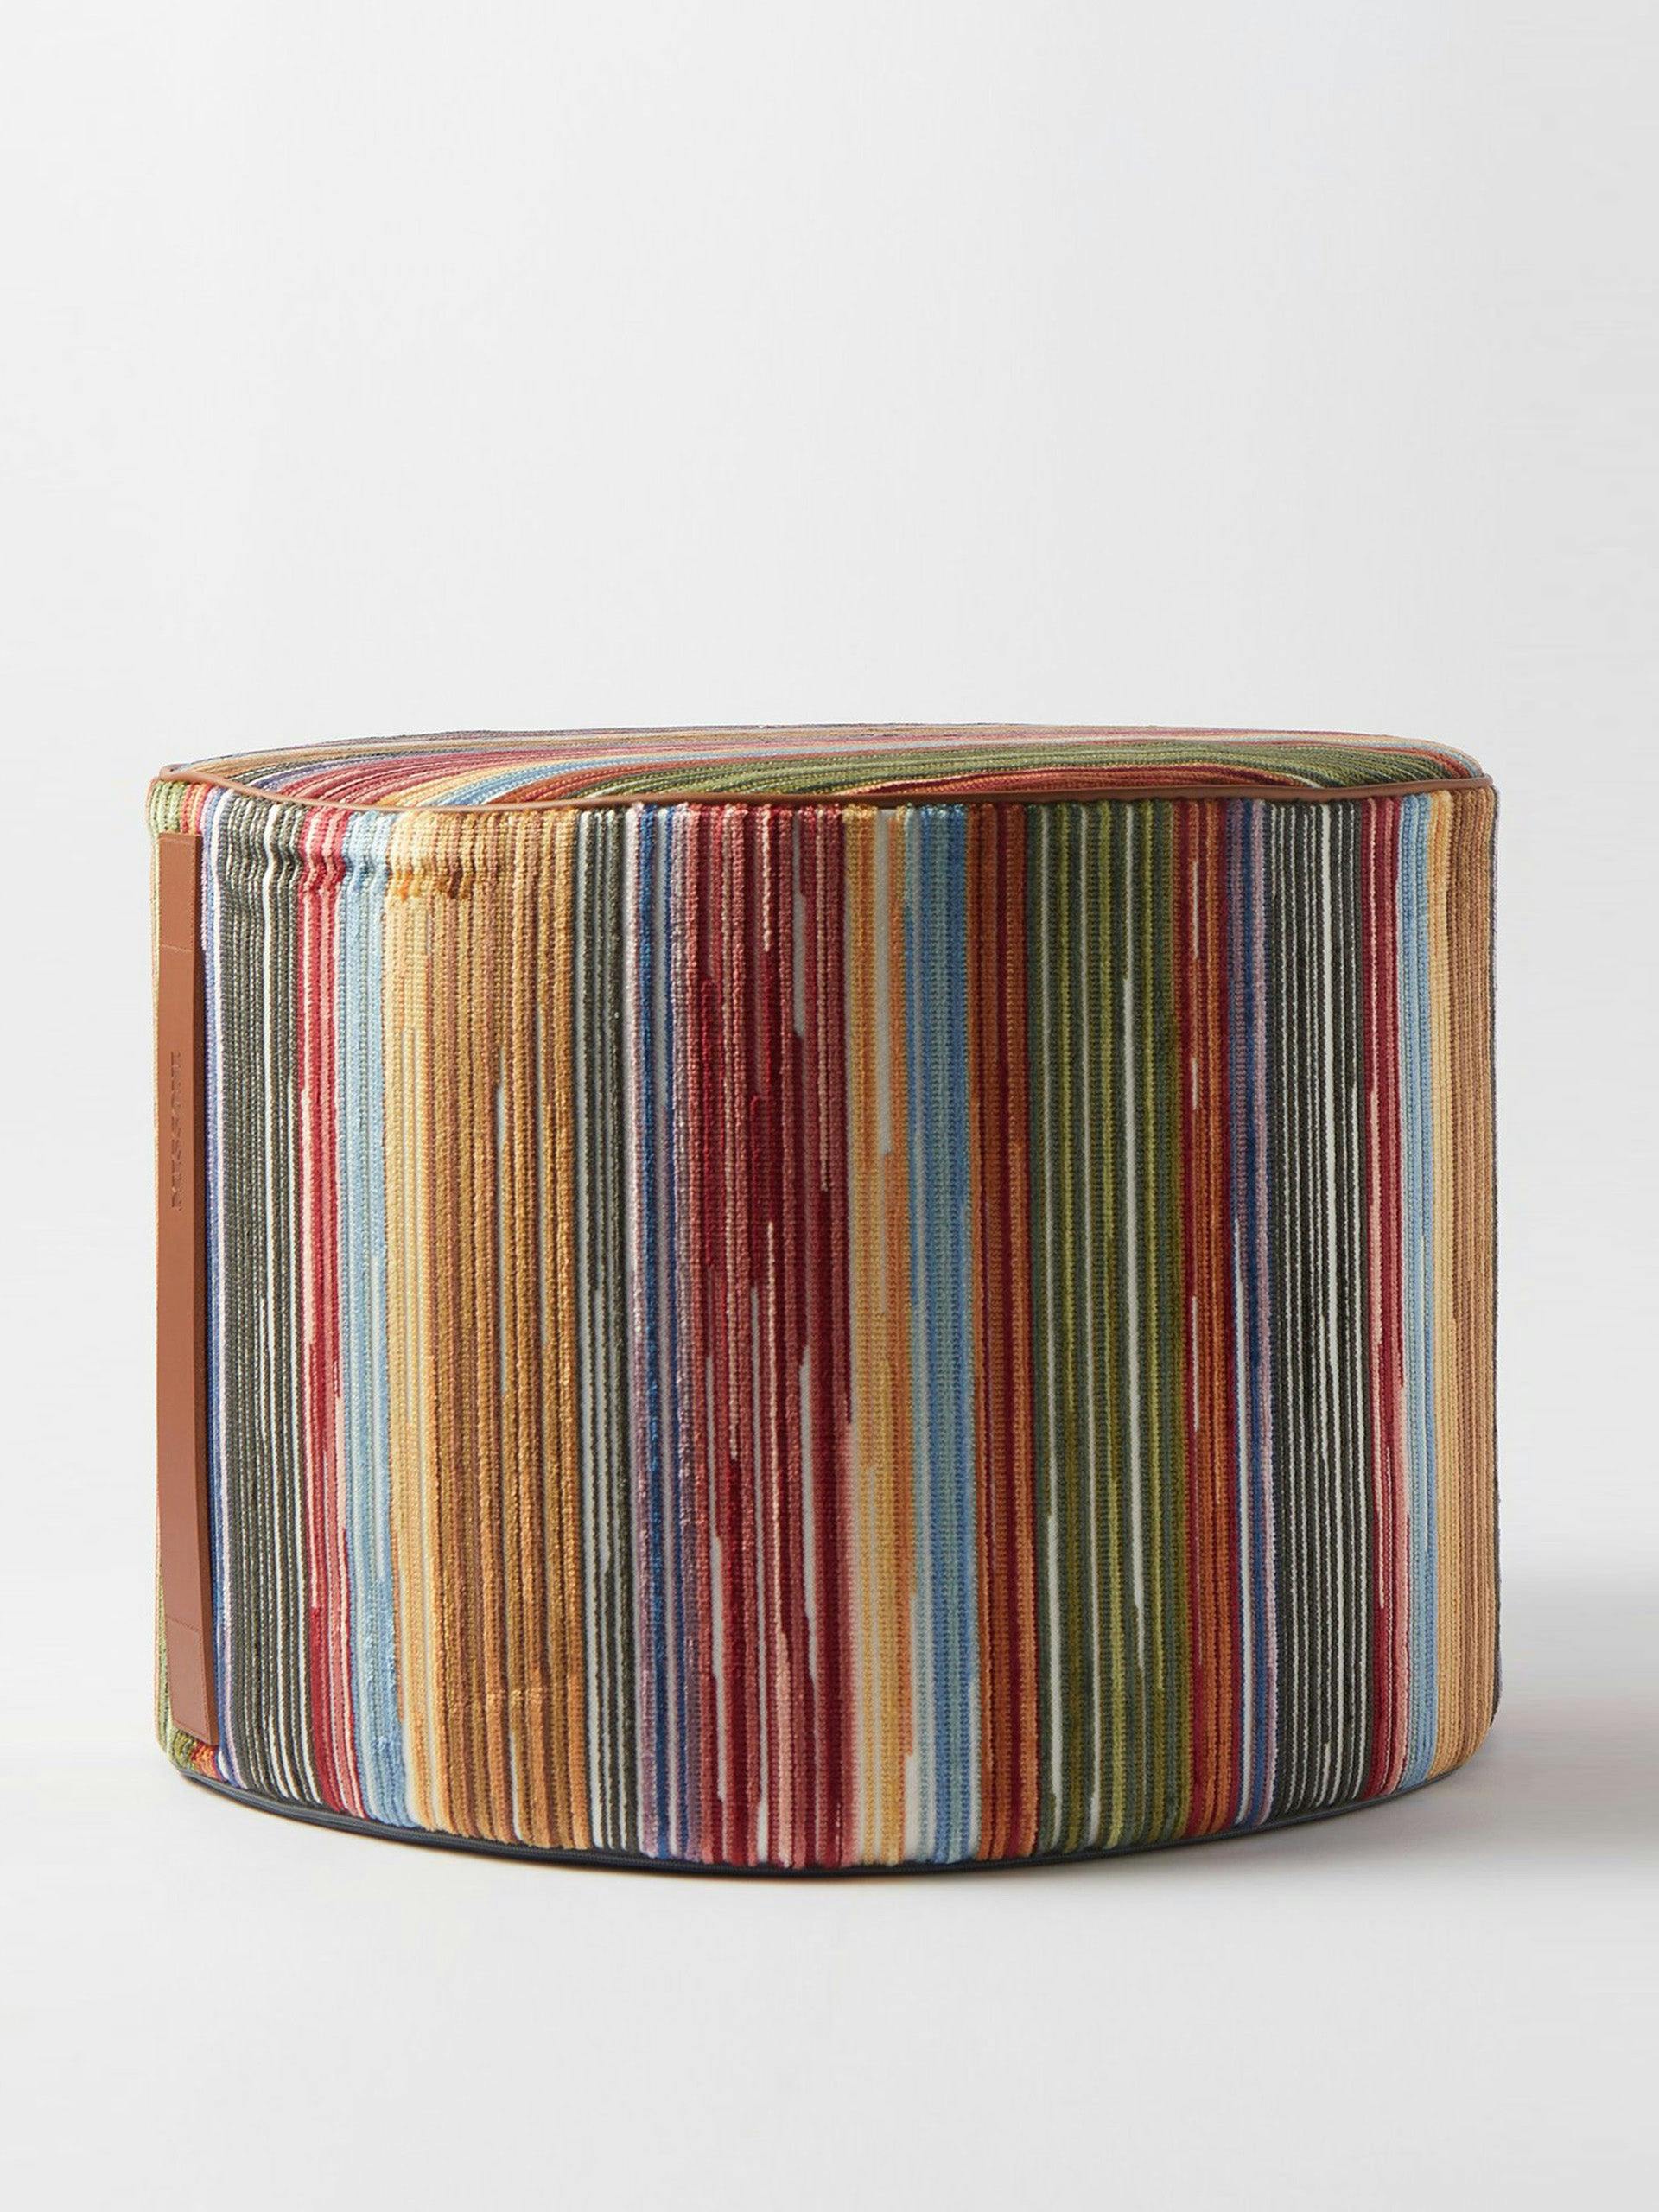 Multi-coloured striped pouf